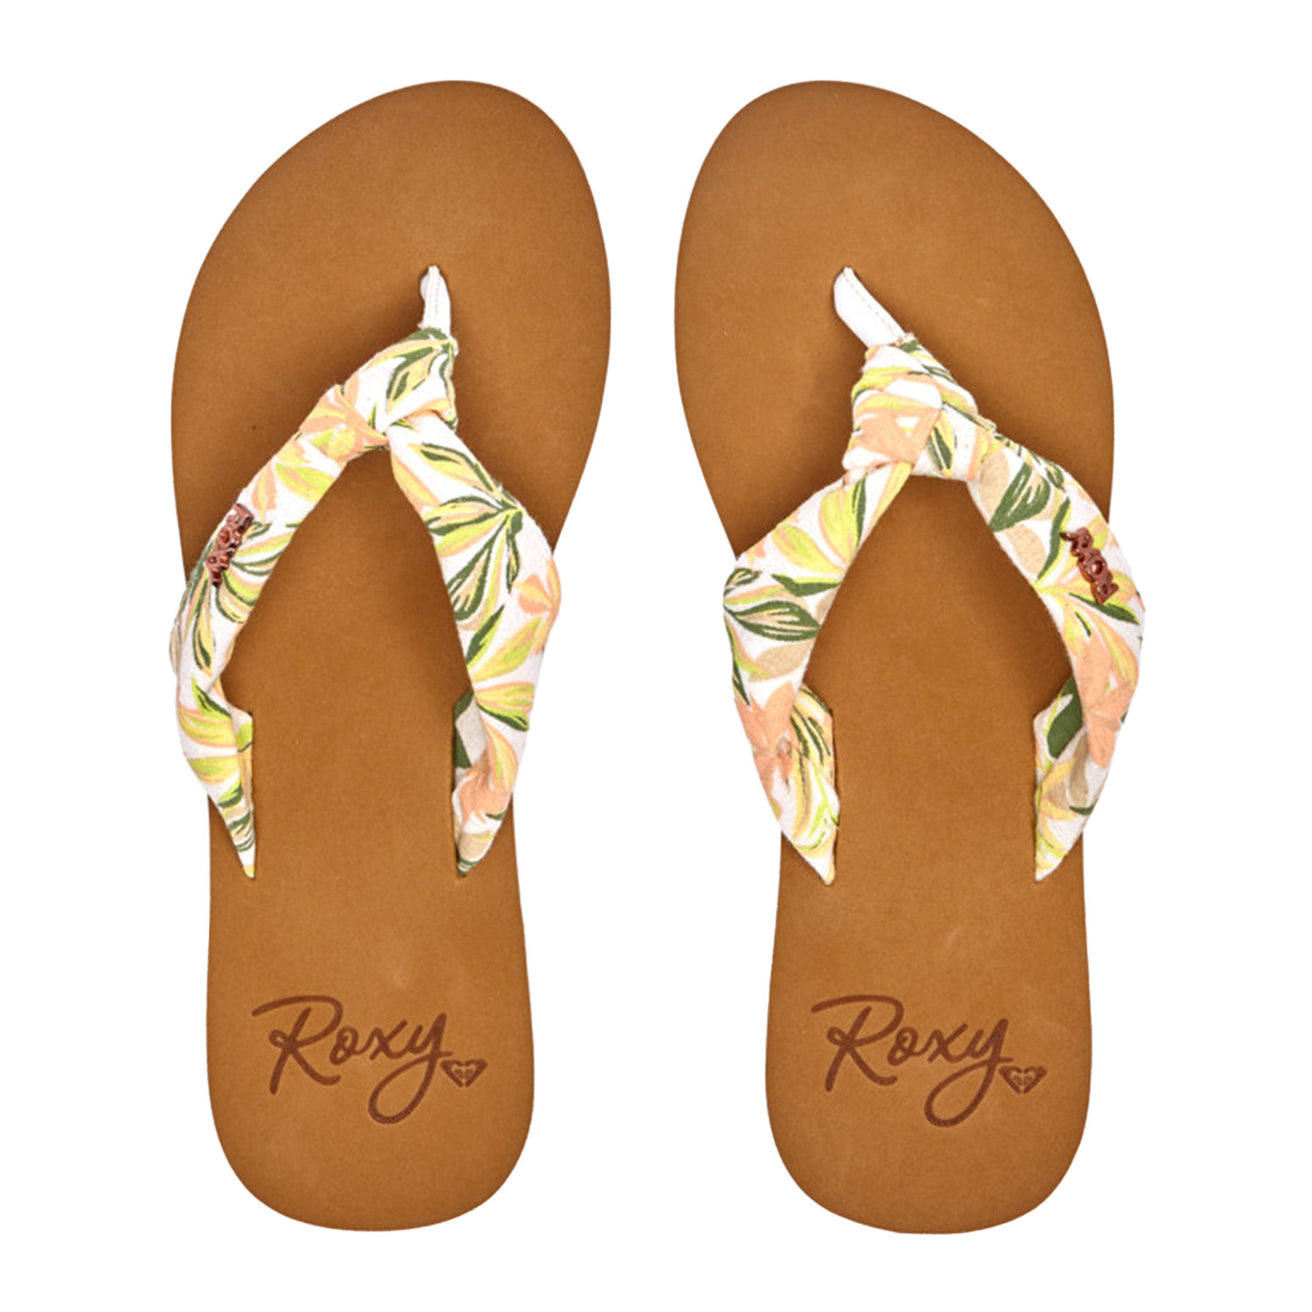 Roxy | Porto Paia Flip Flops - White Pink